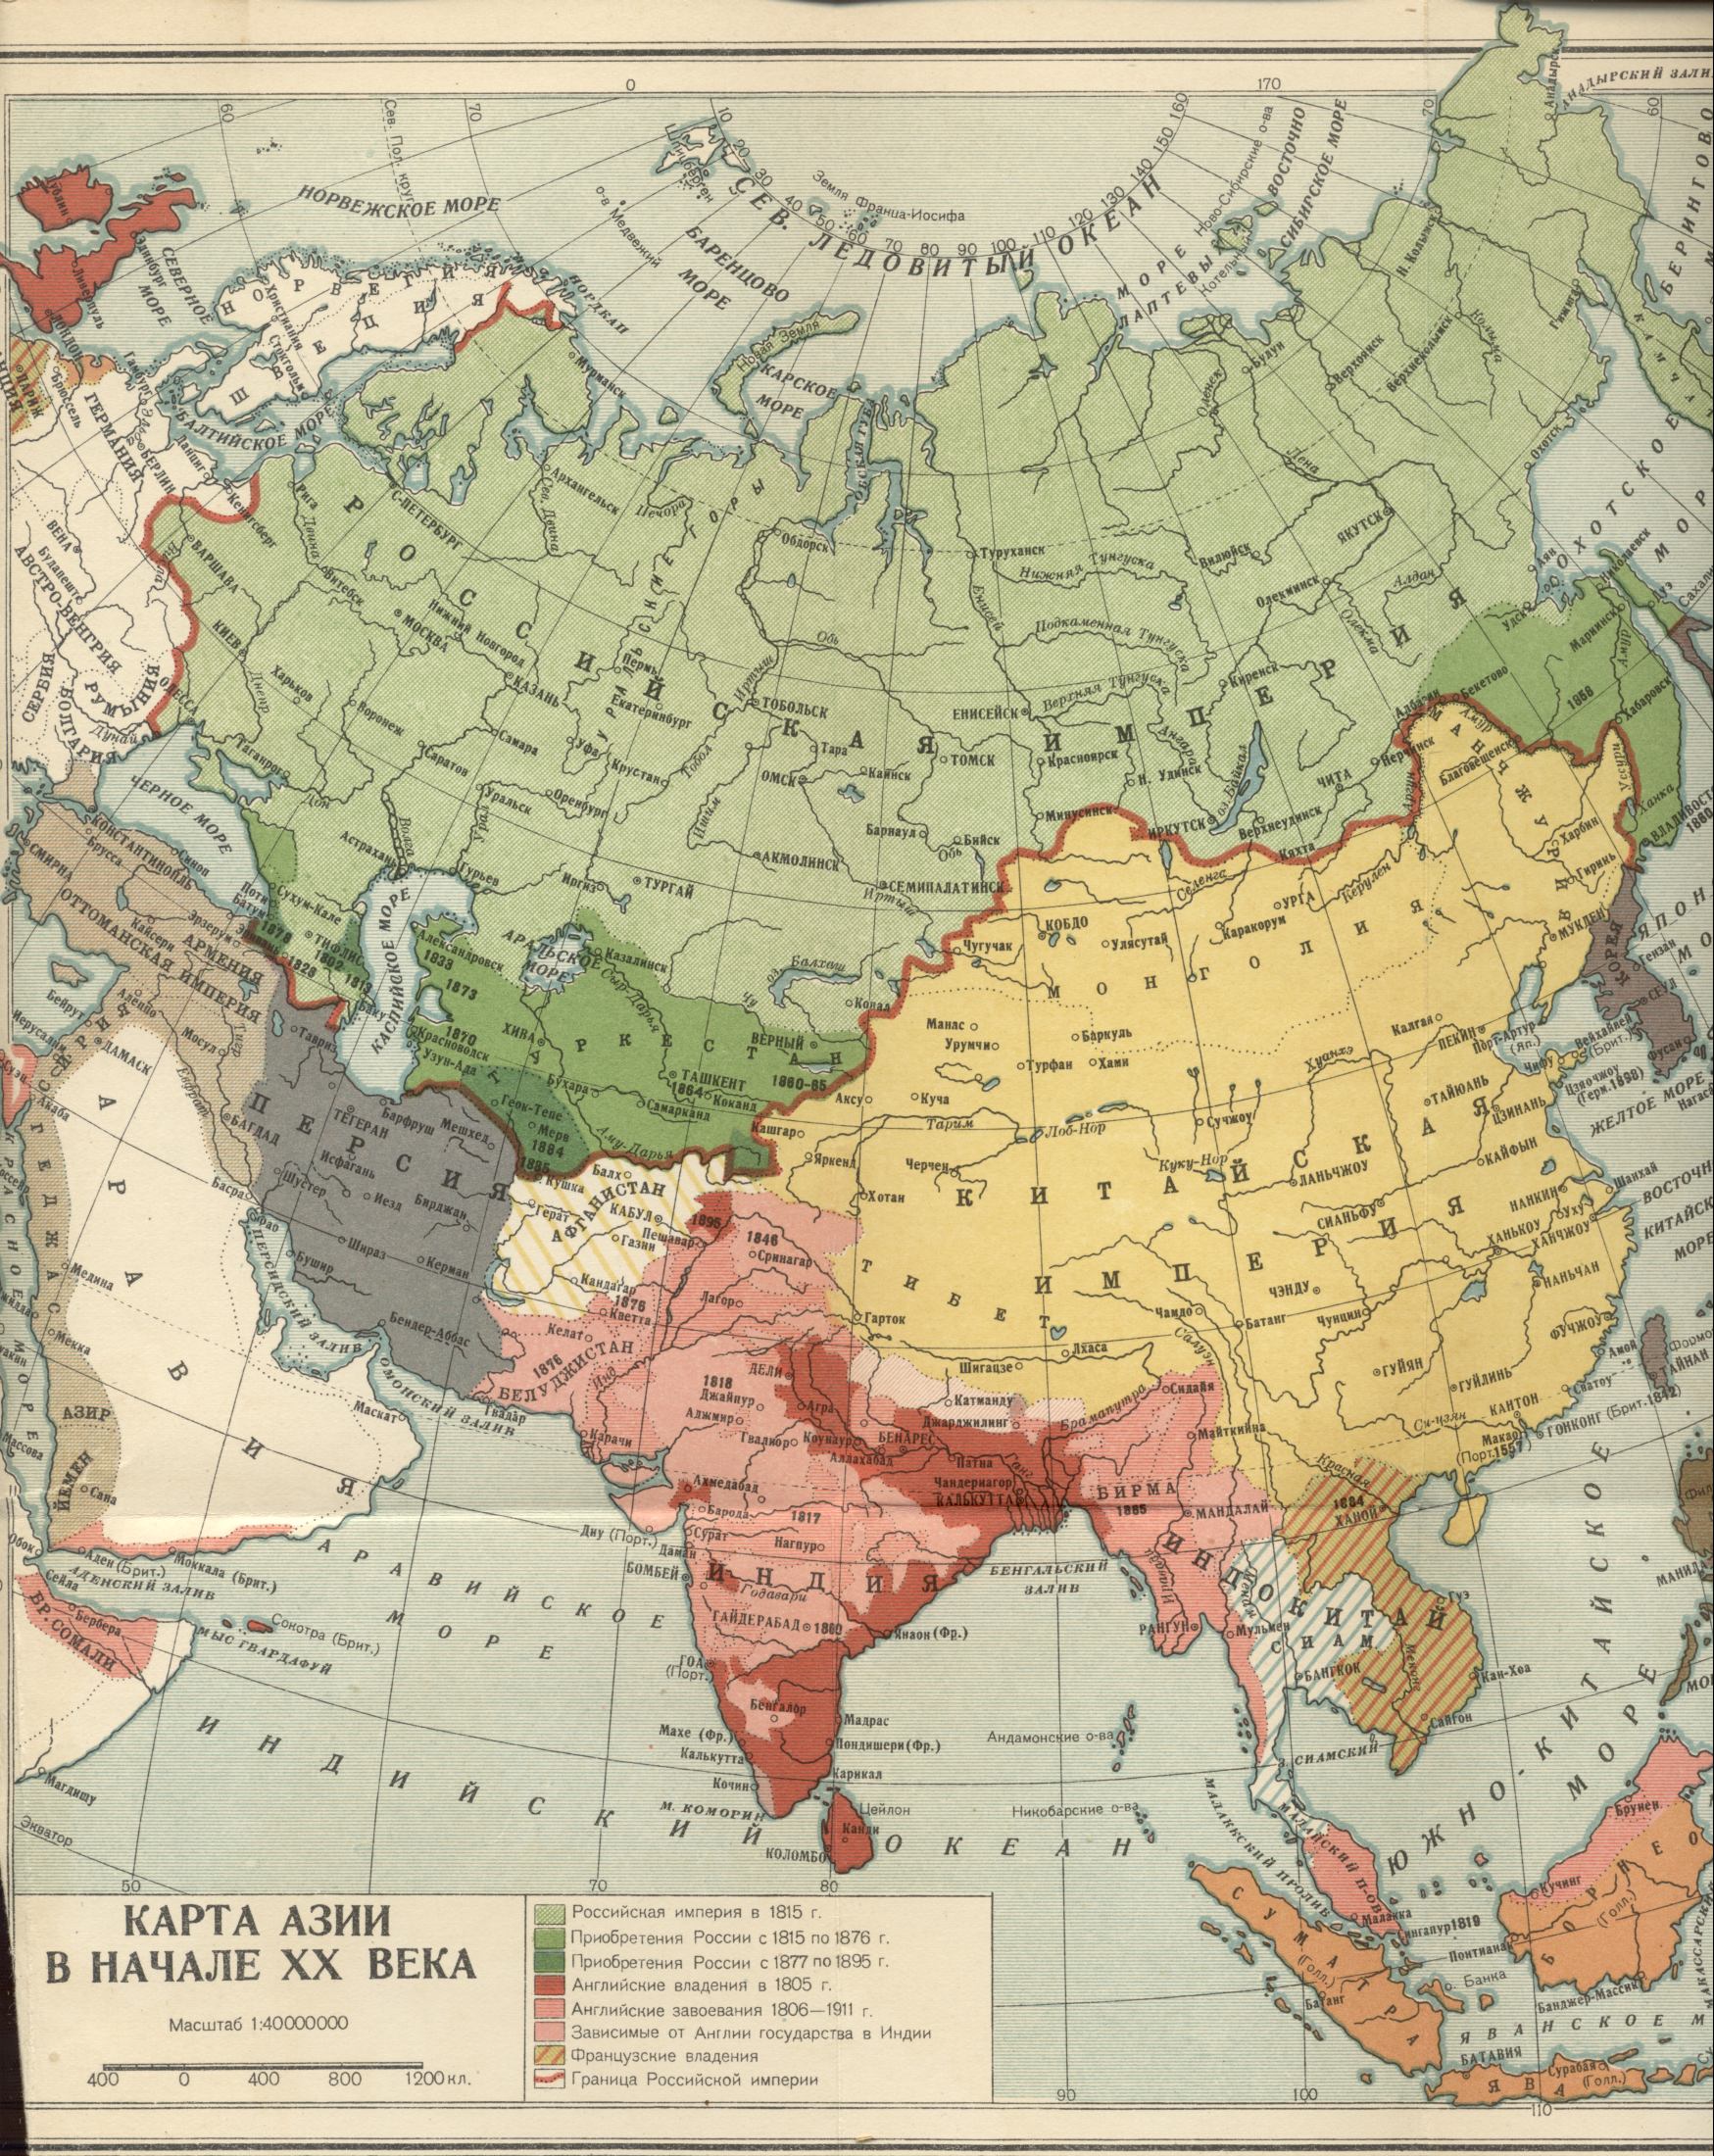 1900. Carte politique du monde - Carte de l'Asie au début du 20e siècle. Télécharger une carte détaillée